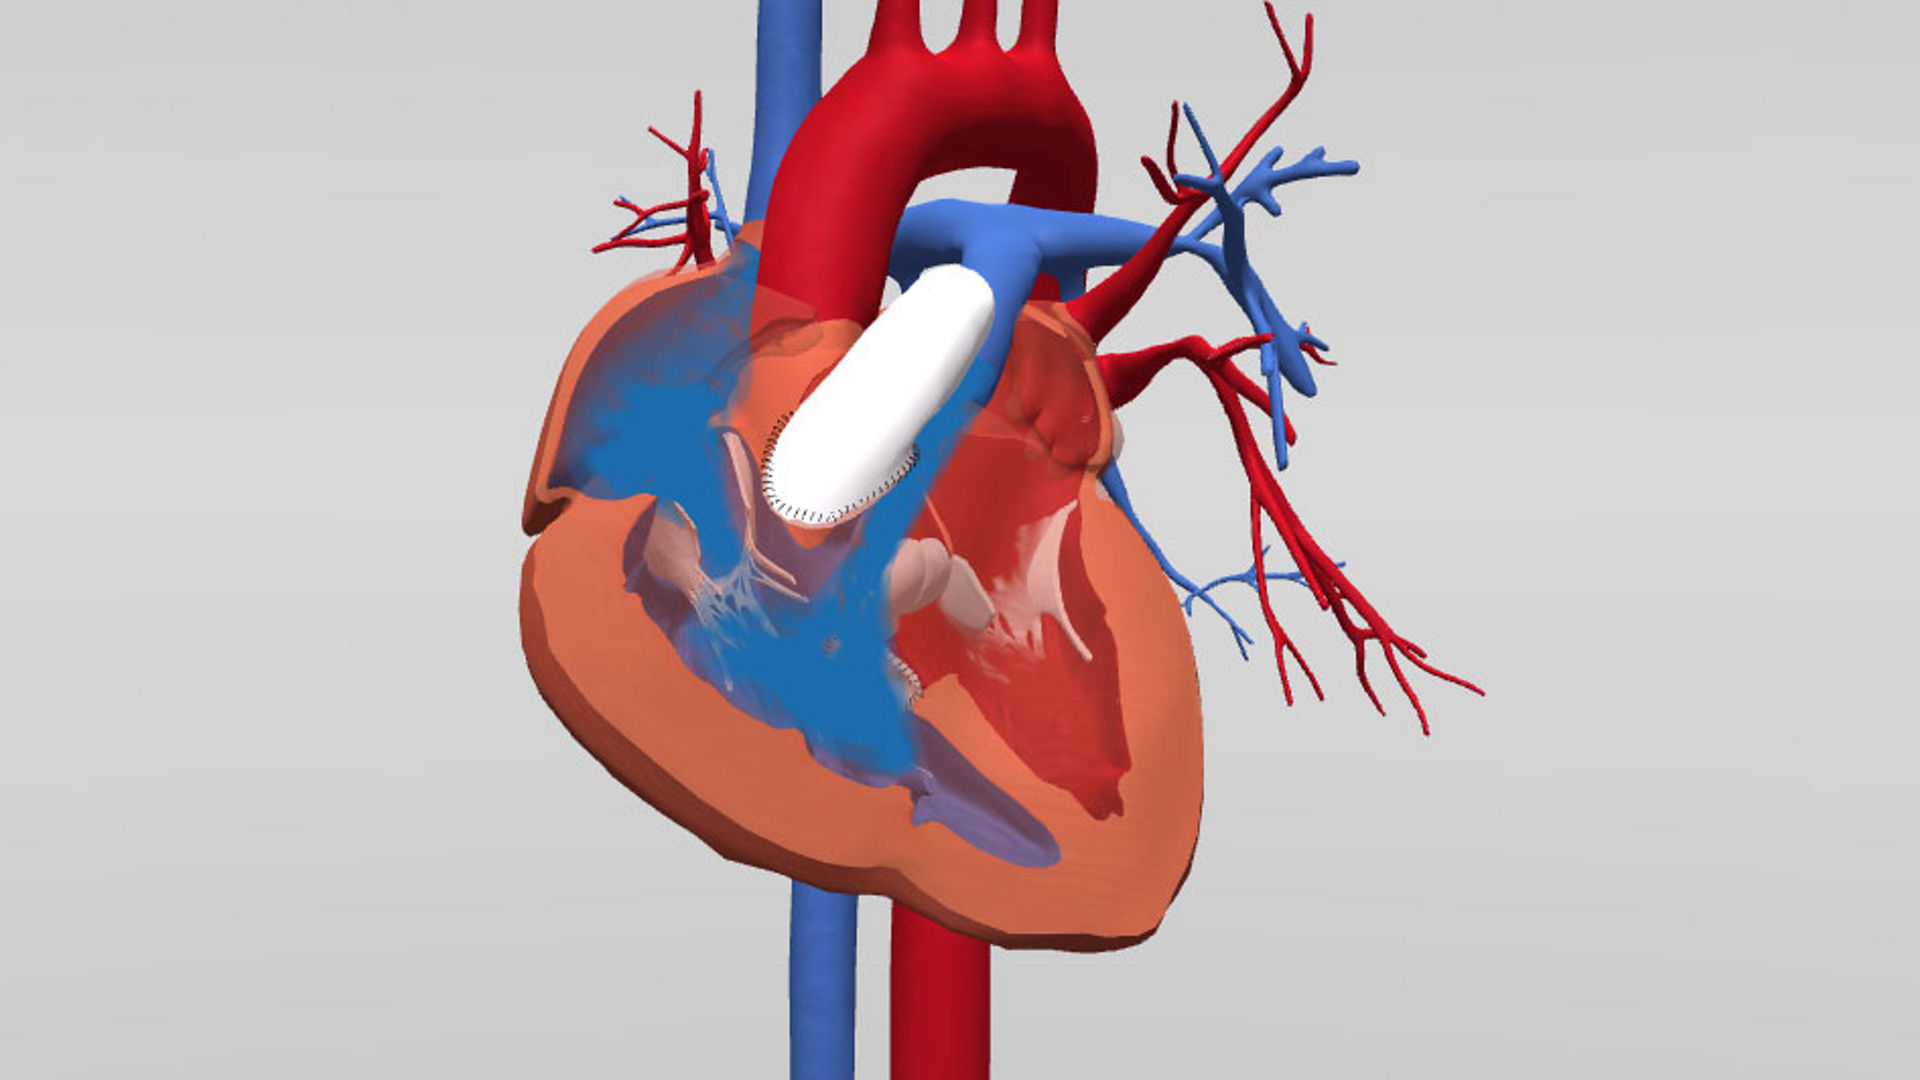 3D heart